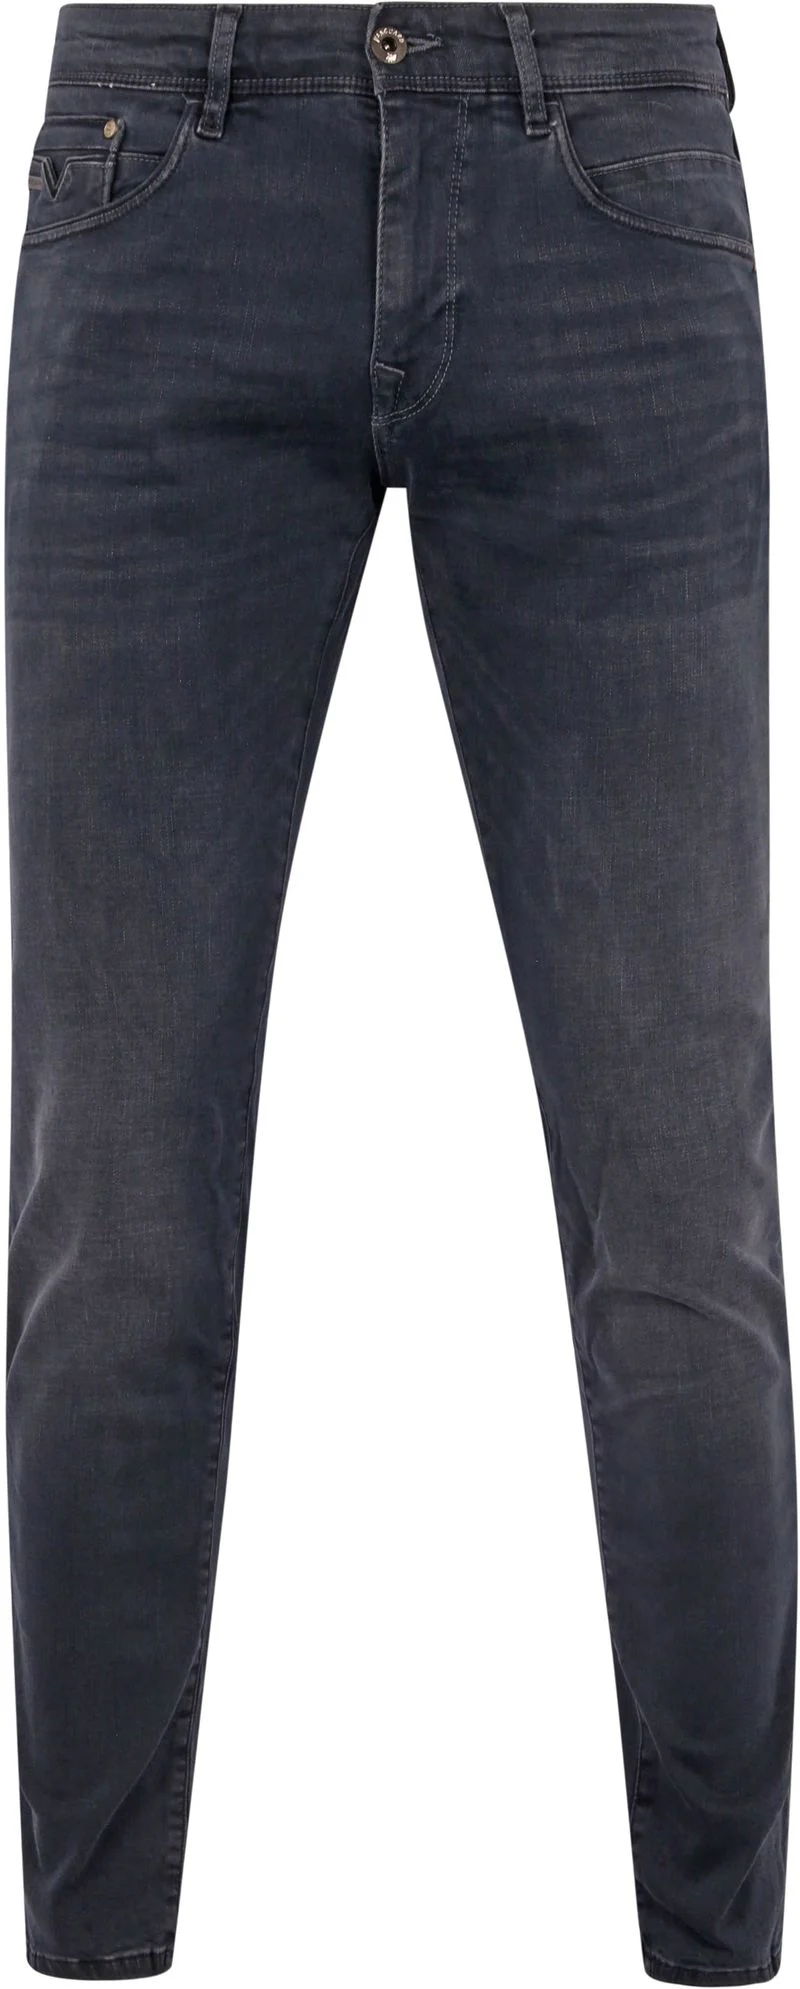 Vanguard Jeans V12 Rider Anthrazit ODB - Größe W 30 - L 34 günstig online kaufen